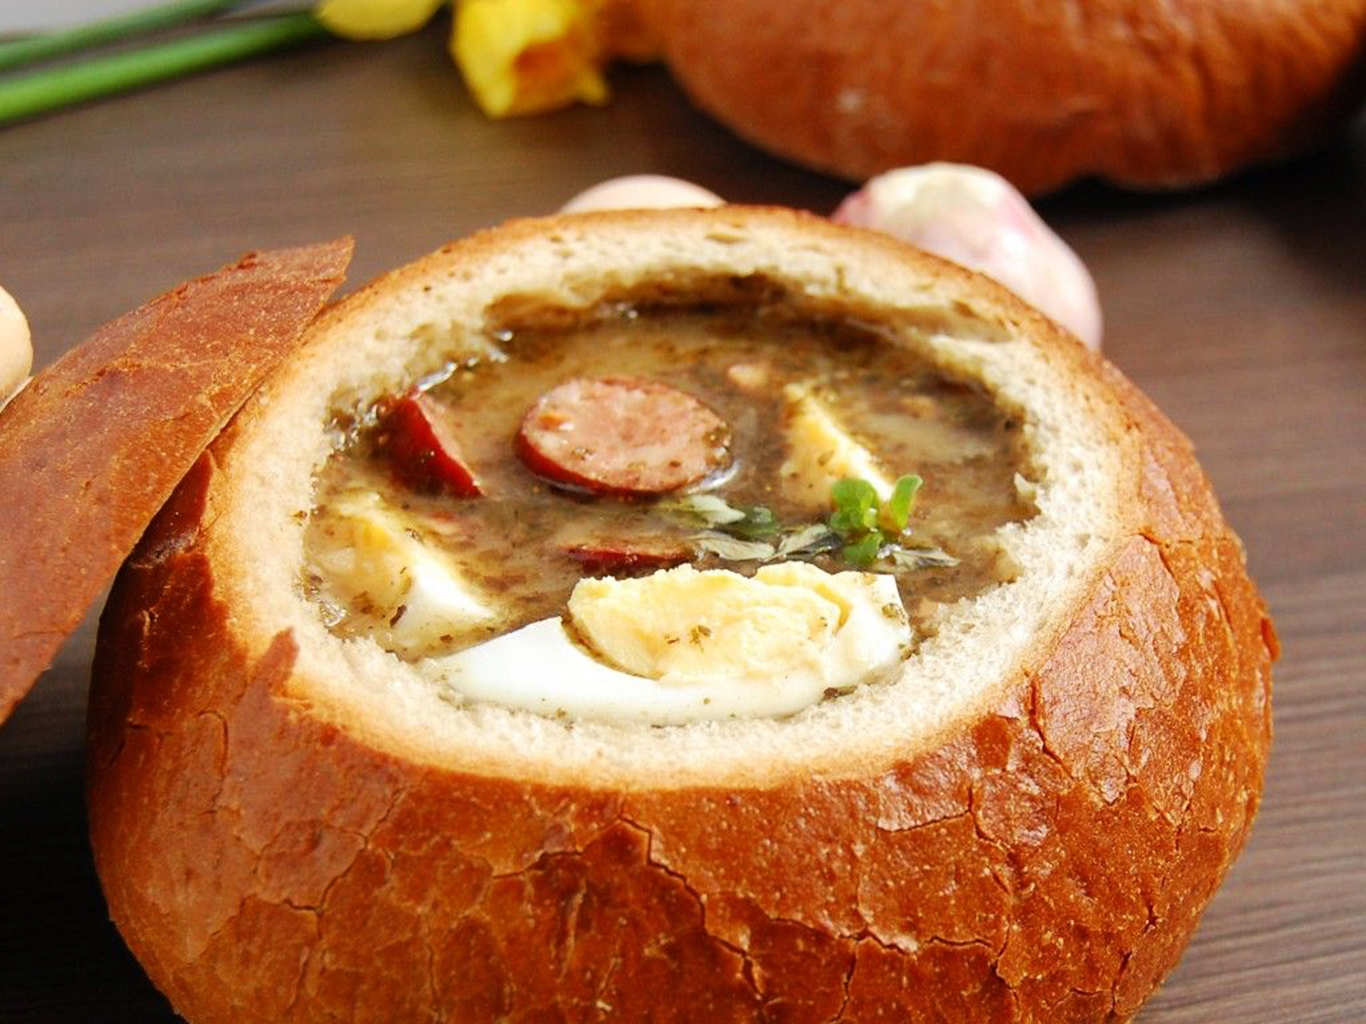 Kyselá polévka żurek se tradičně servíruje v chlebové misce